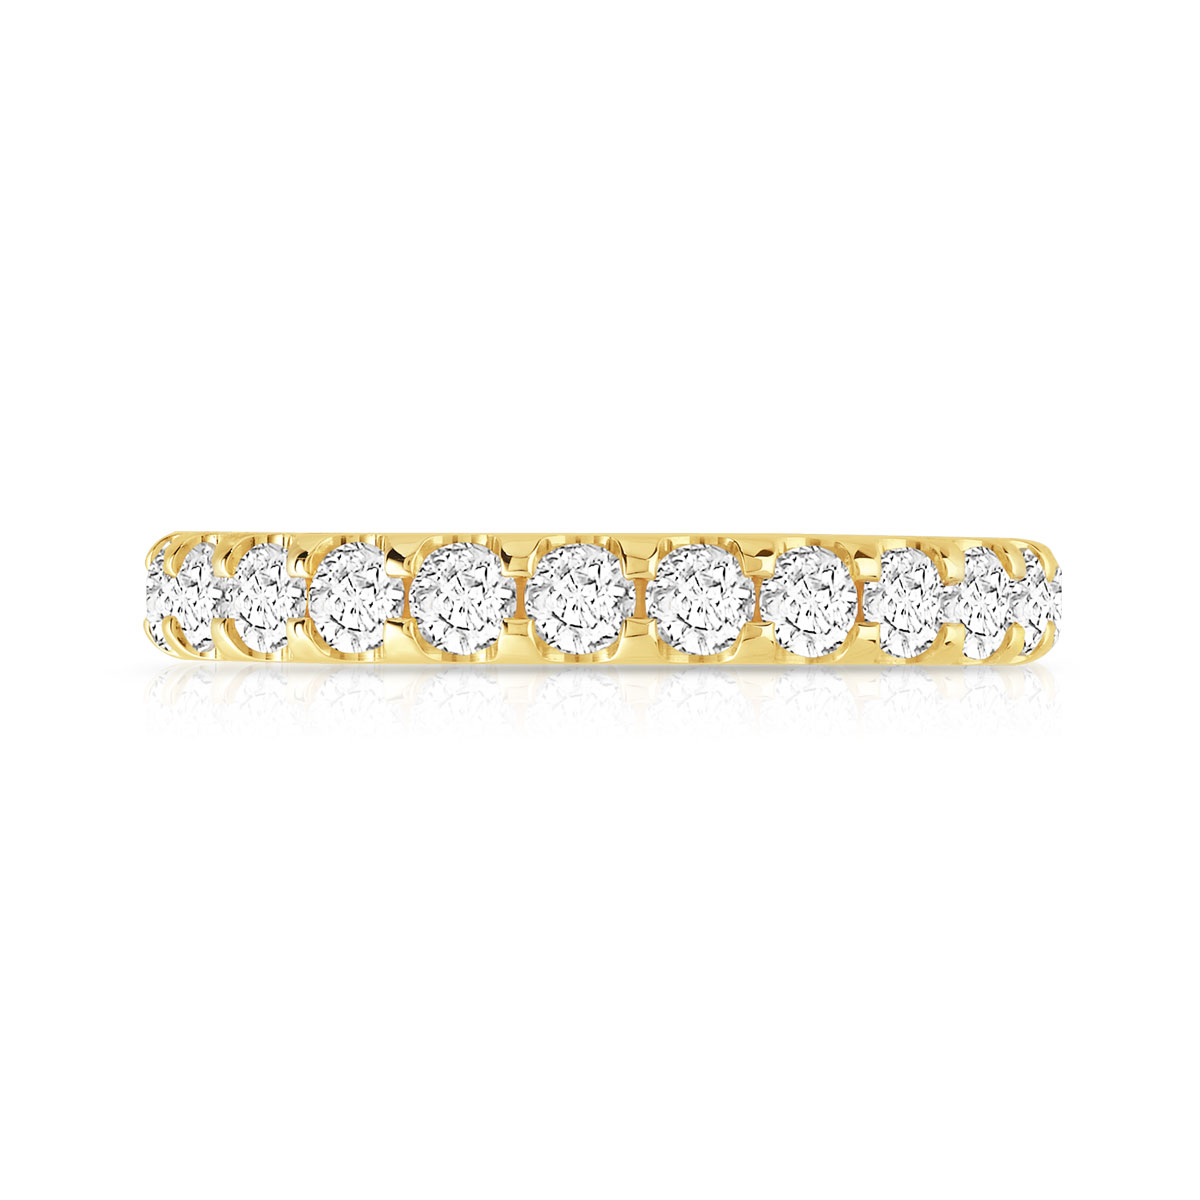 Alliance or 750 jaune diamants synthétiques total 1,50 carat - vue 3